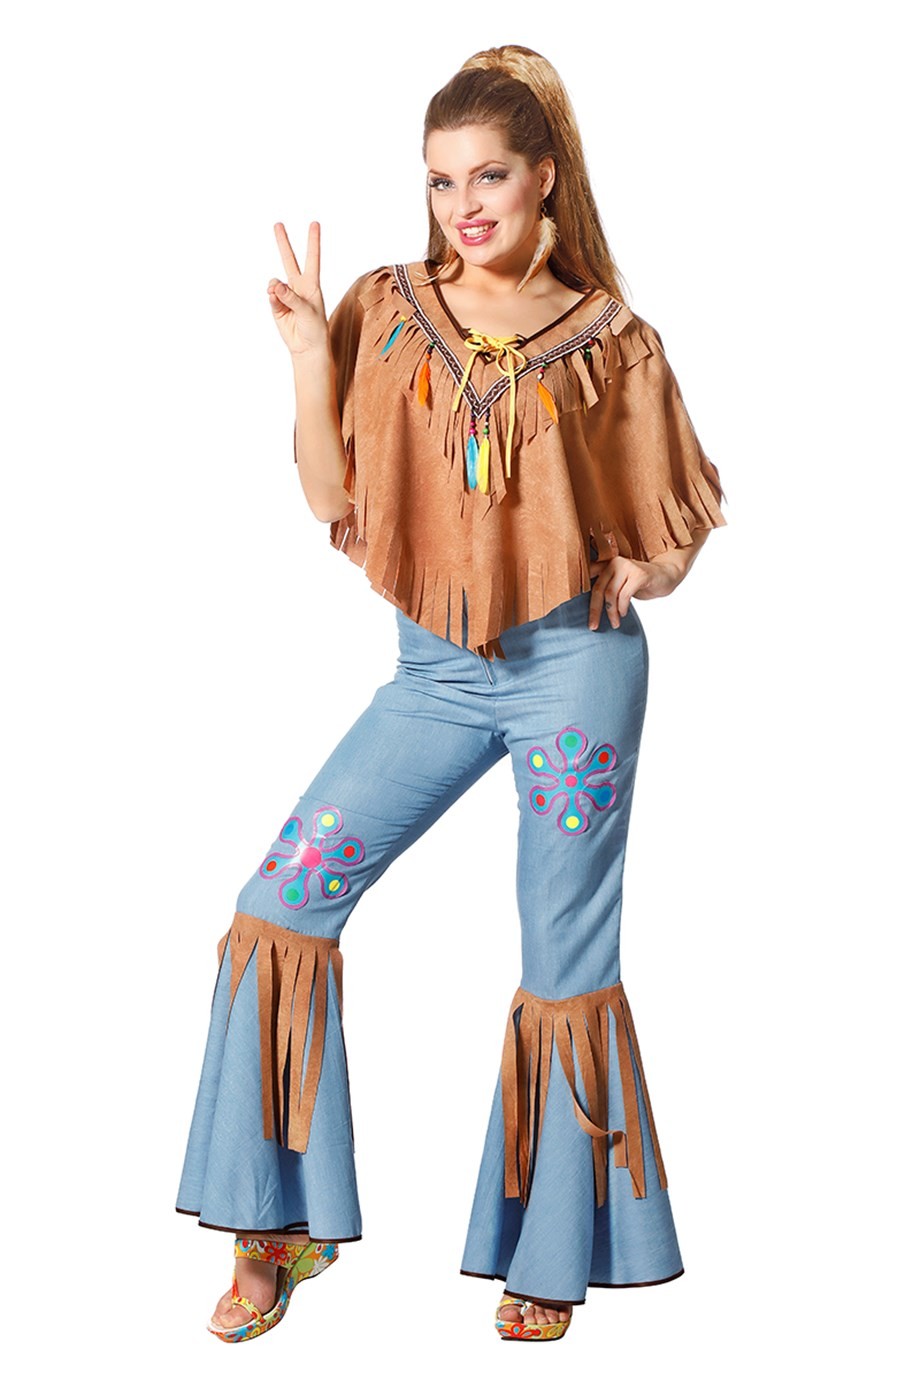 déguisement hippie femme - Le Cotillon